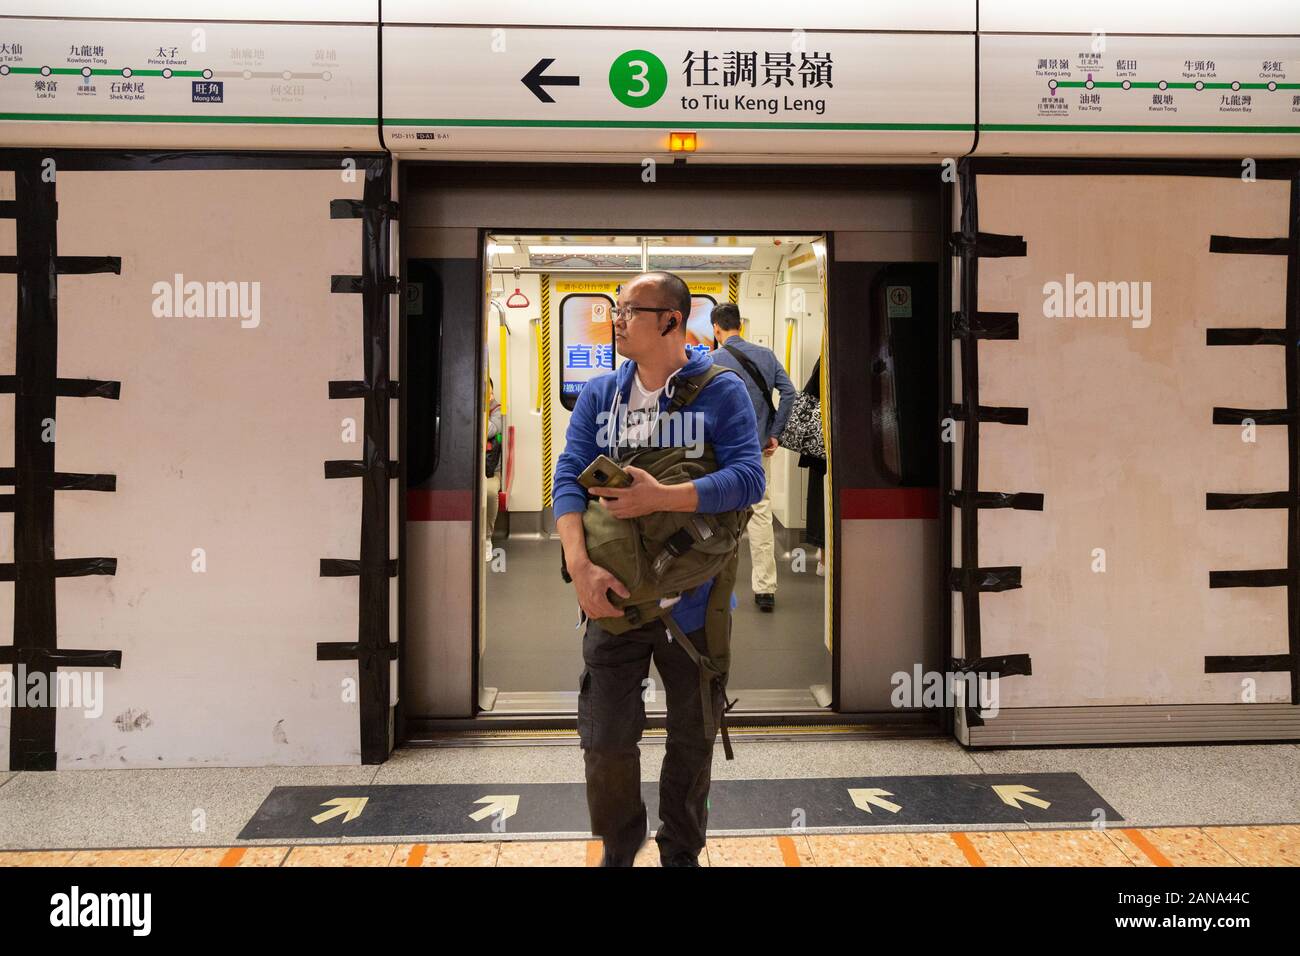 Le passager du train de masse de Hong Kong descendre d'un train à la gare de Kowloon, Hong Kong Asie Banque D'Images